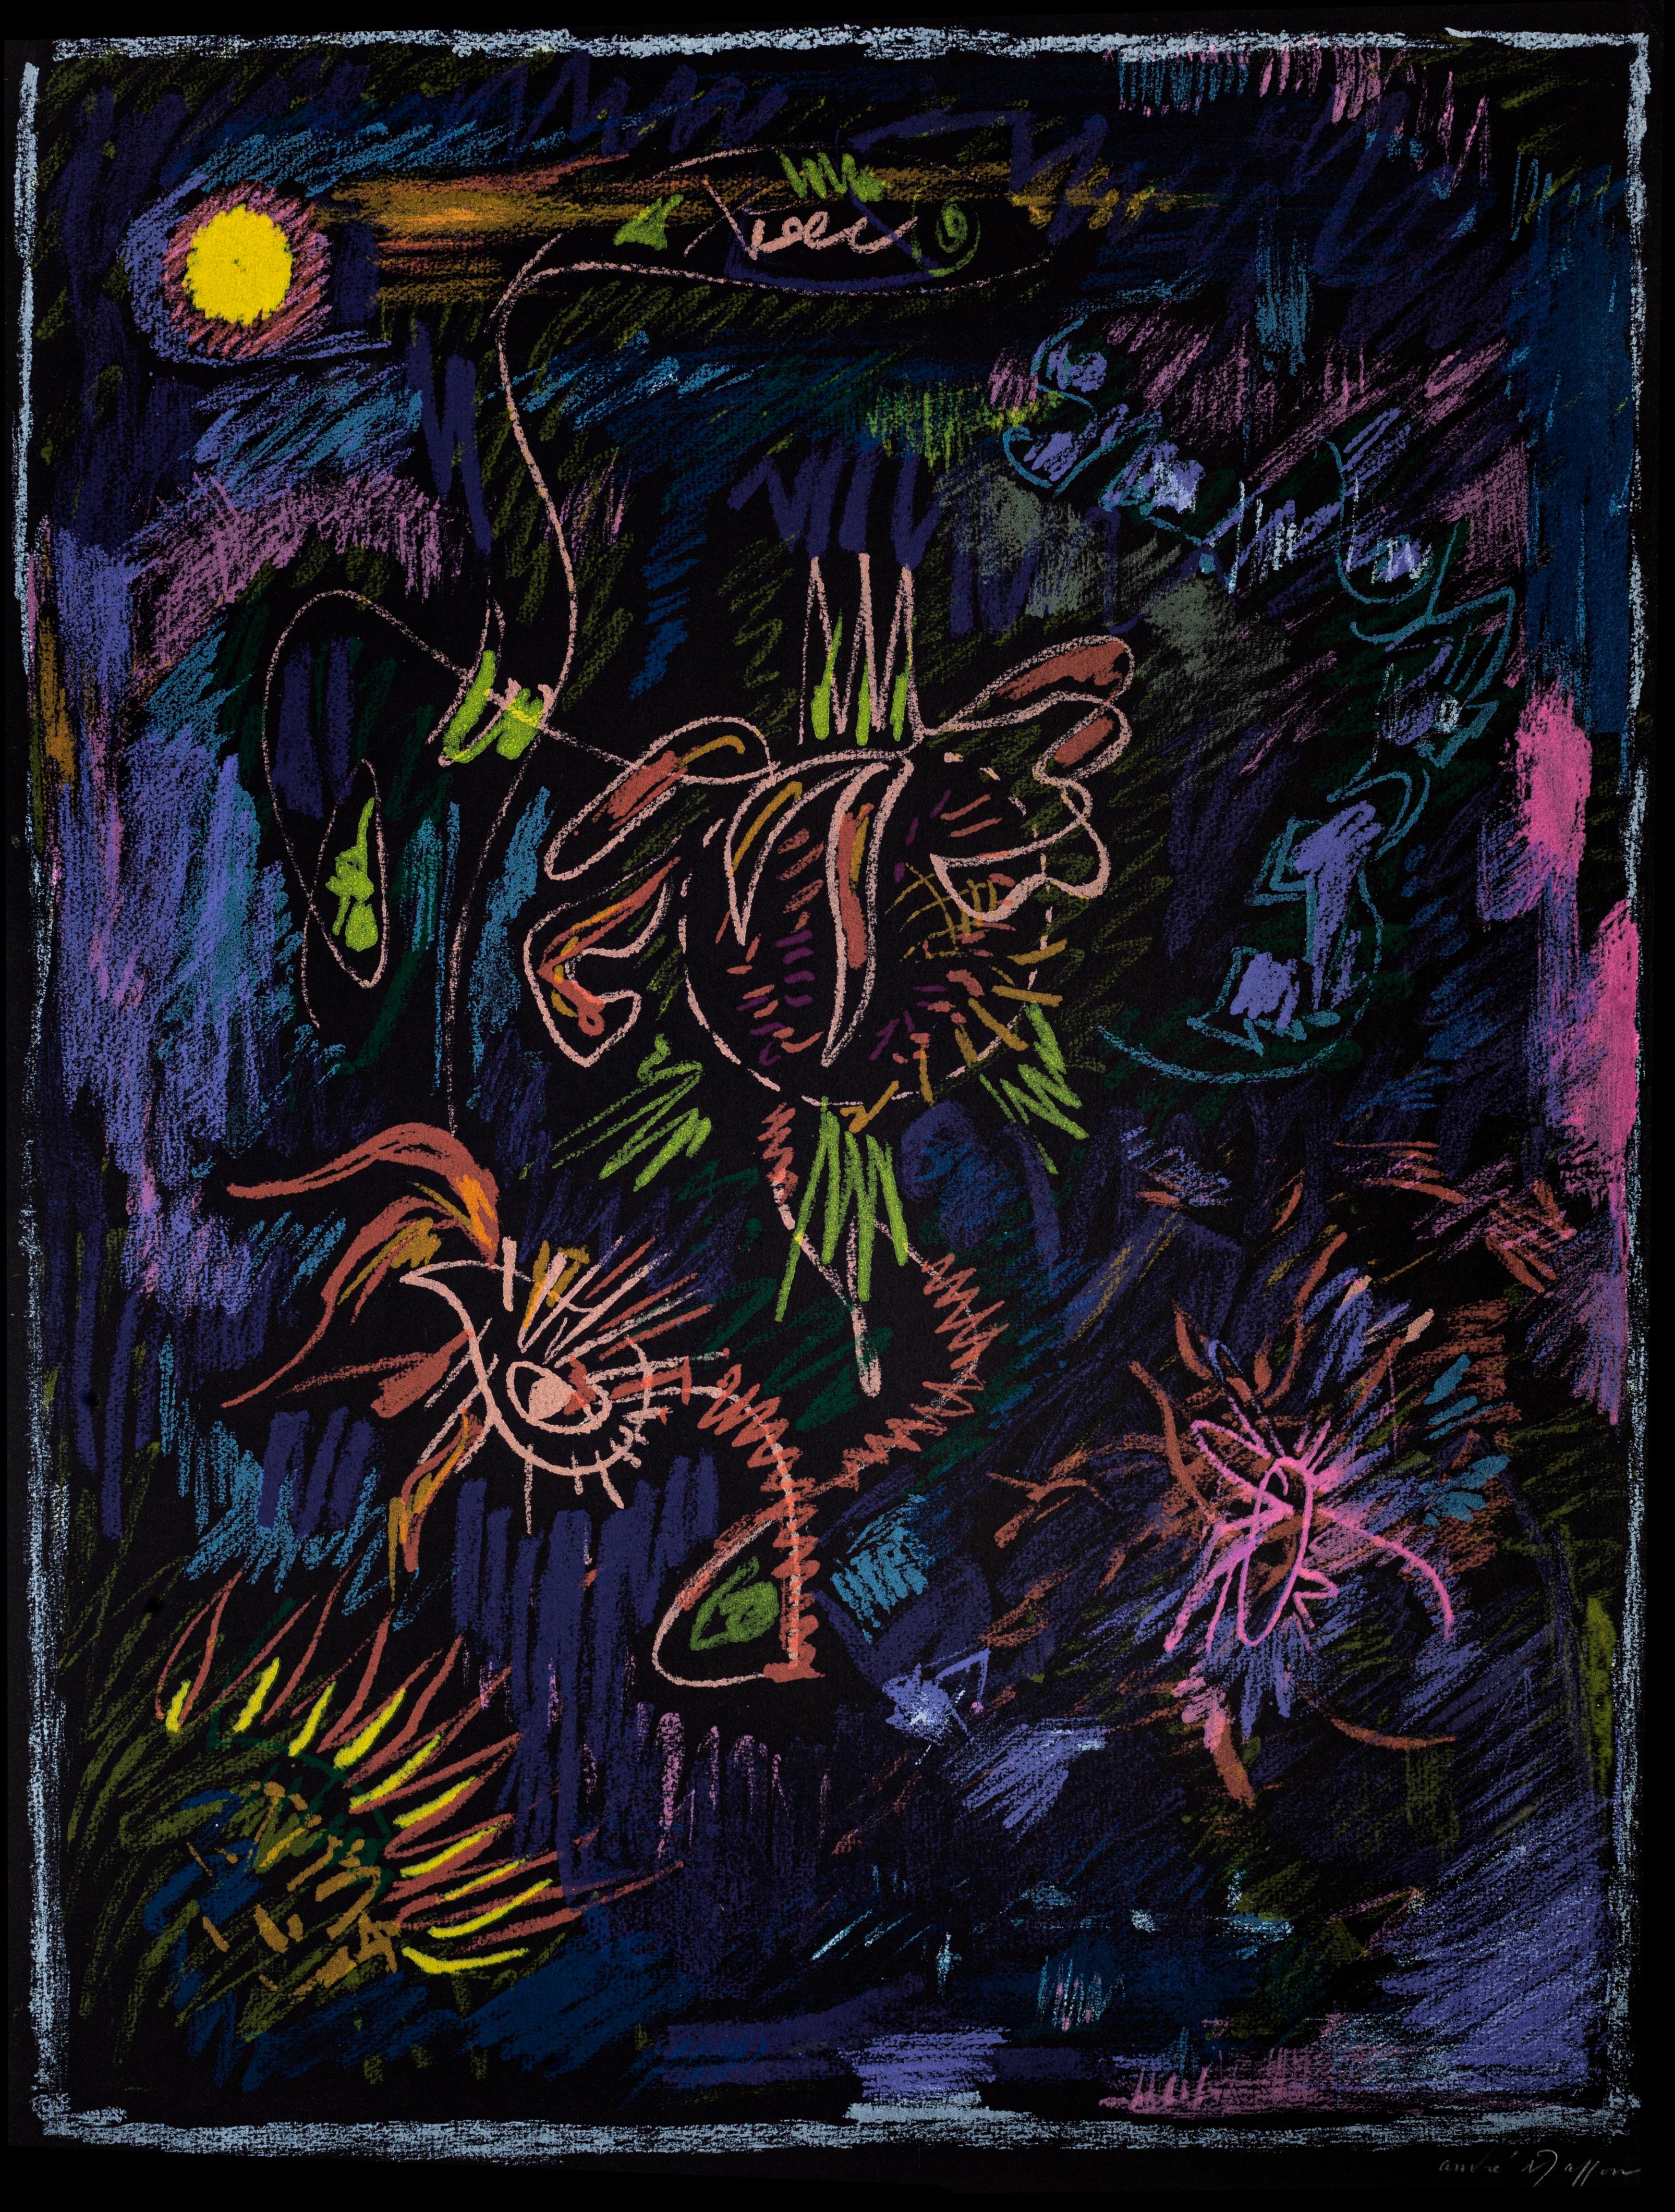 Composition abstraite est une lithographie originale en couleurs réalisée dans la moitié du XXe siècle par Andre Masson.

Signé à la main dans la marge inférieure droite.

Numéroté en bas à gauche. Édition 17/25.

L'œuvre d'art représente l'un des